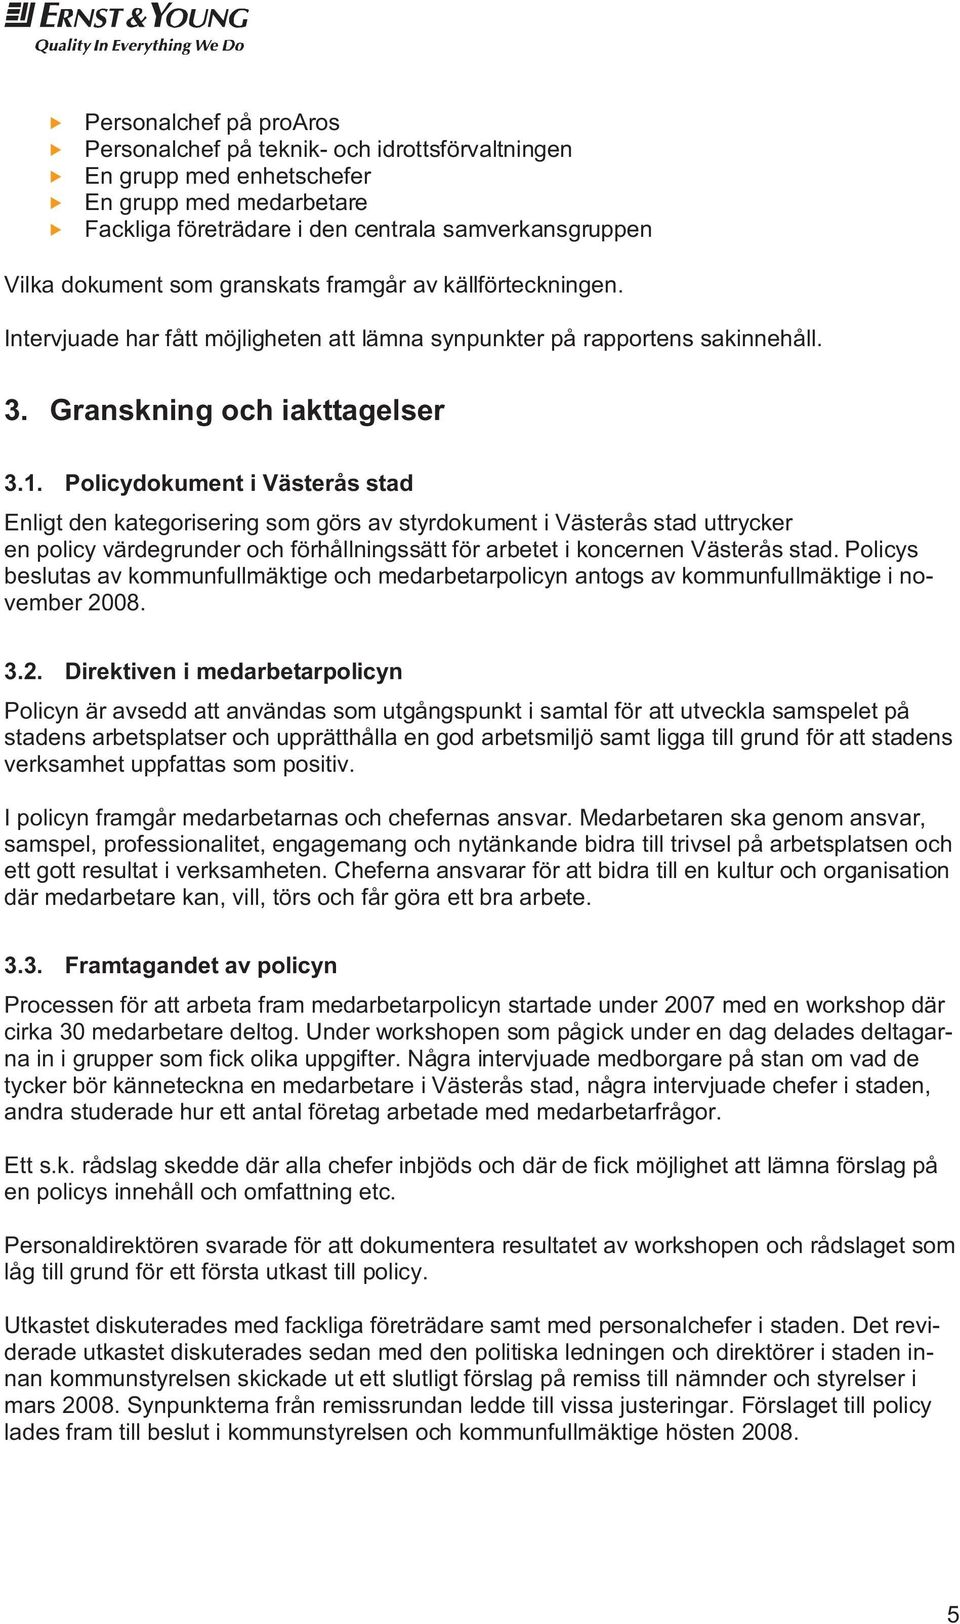 Policydokument i Västerås stad Enligt den kategorisering som görs av styrdokument i Västerås stad uttrycker en policy värdegrunder och förhållningssätt för arbetet i koncernen Västerås stad.